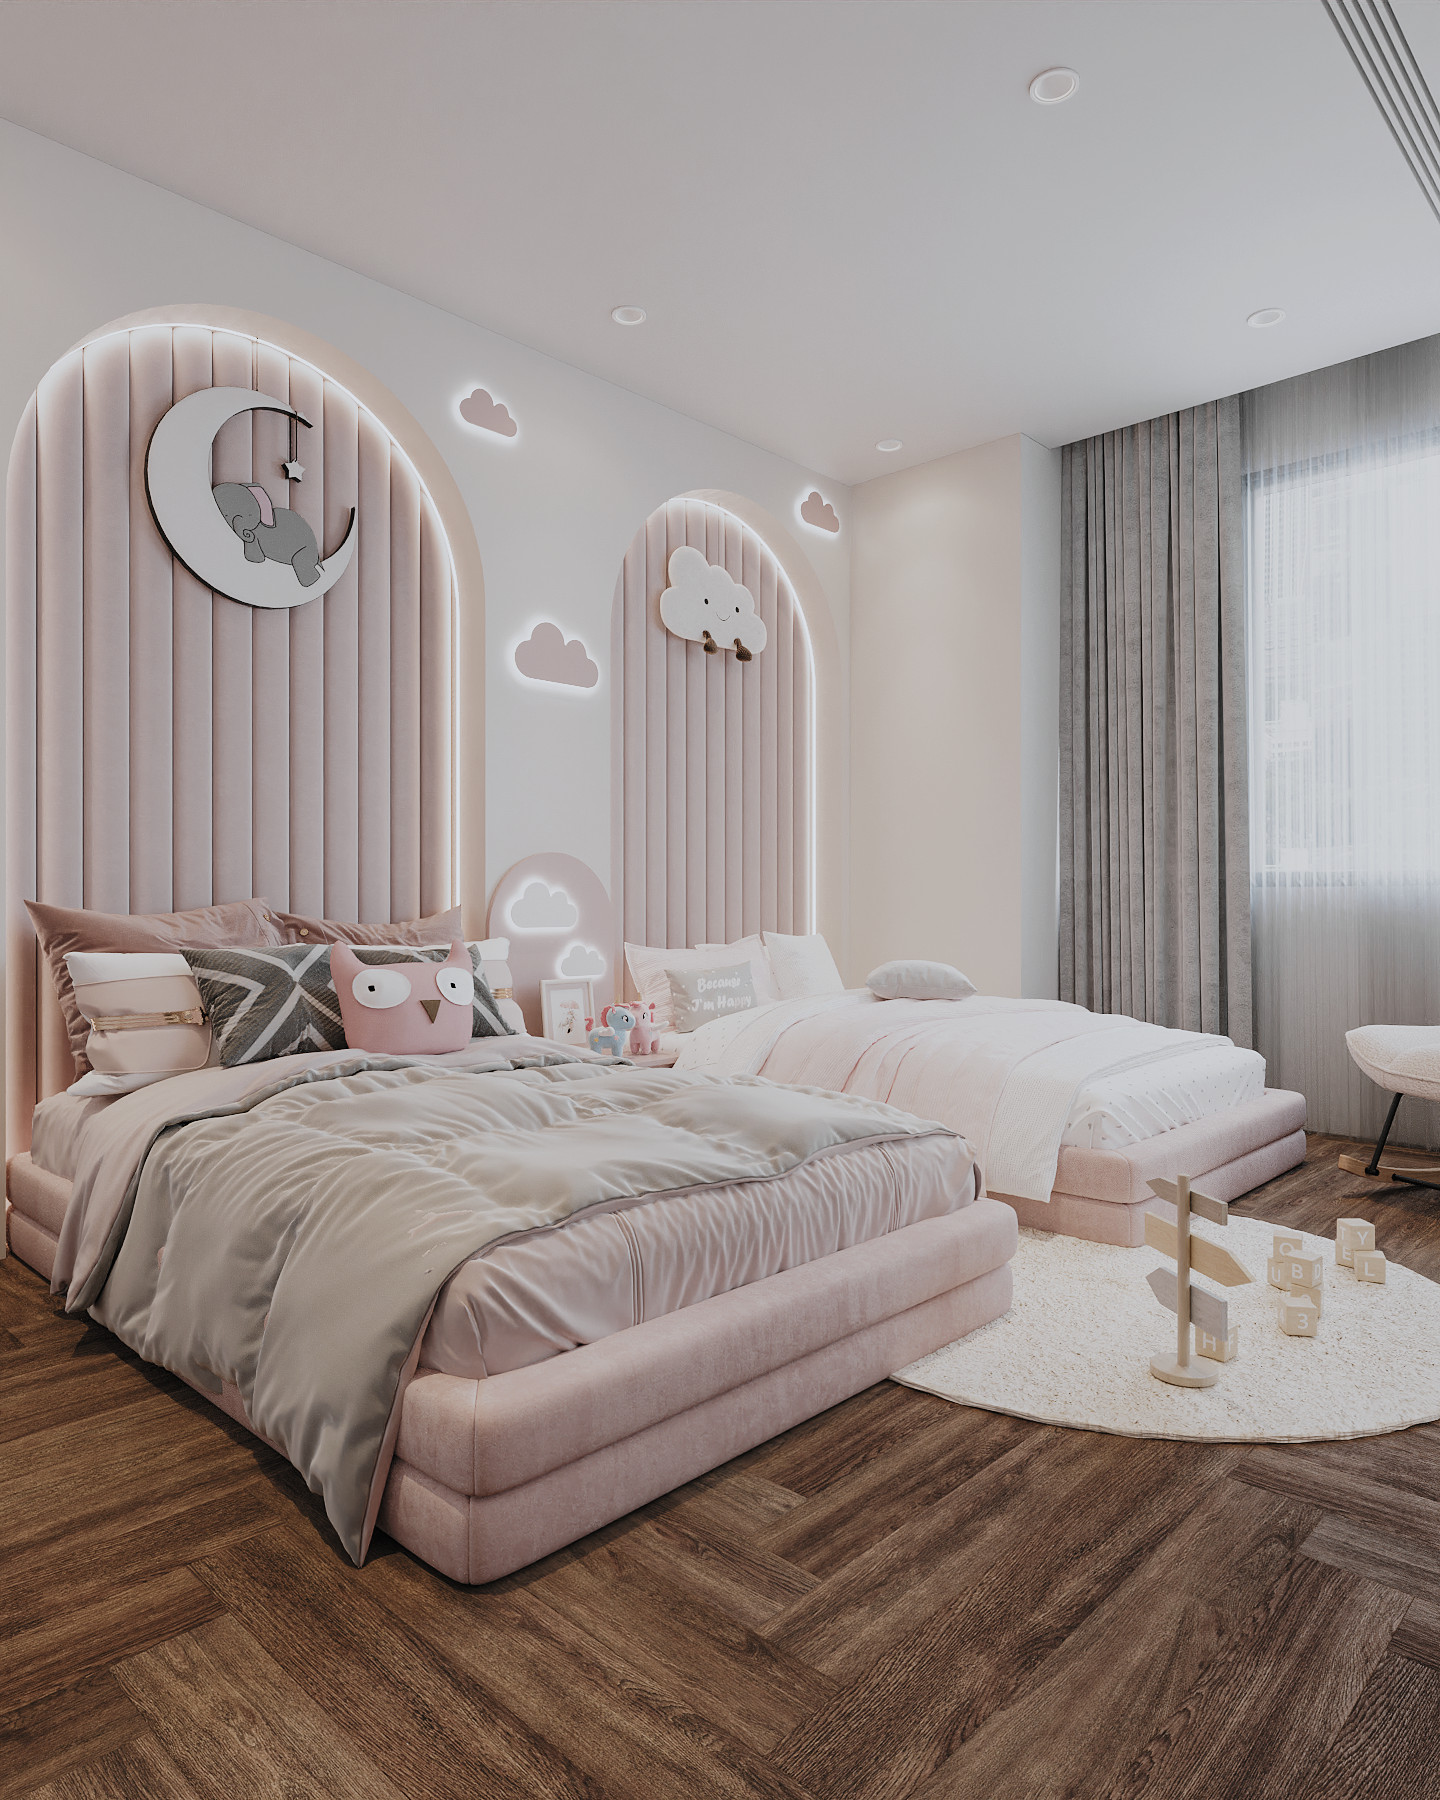 Phòng ngủ cho bé, phong cách Hiện đại Modern, thiết kế concept nội thất, căn hộ Saigon Pearl Topaz 2